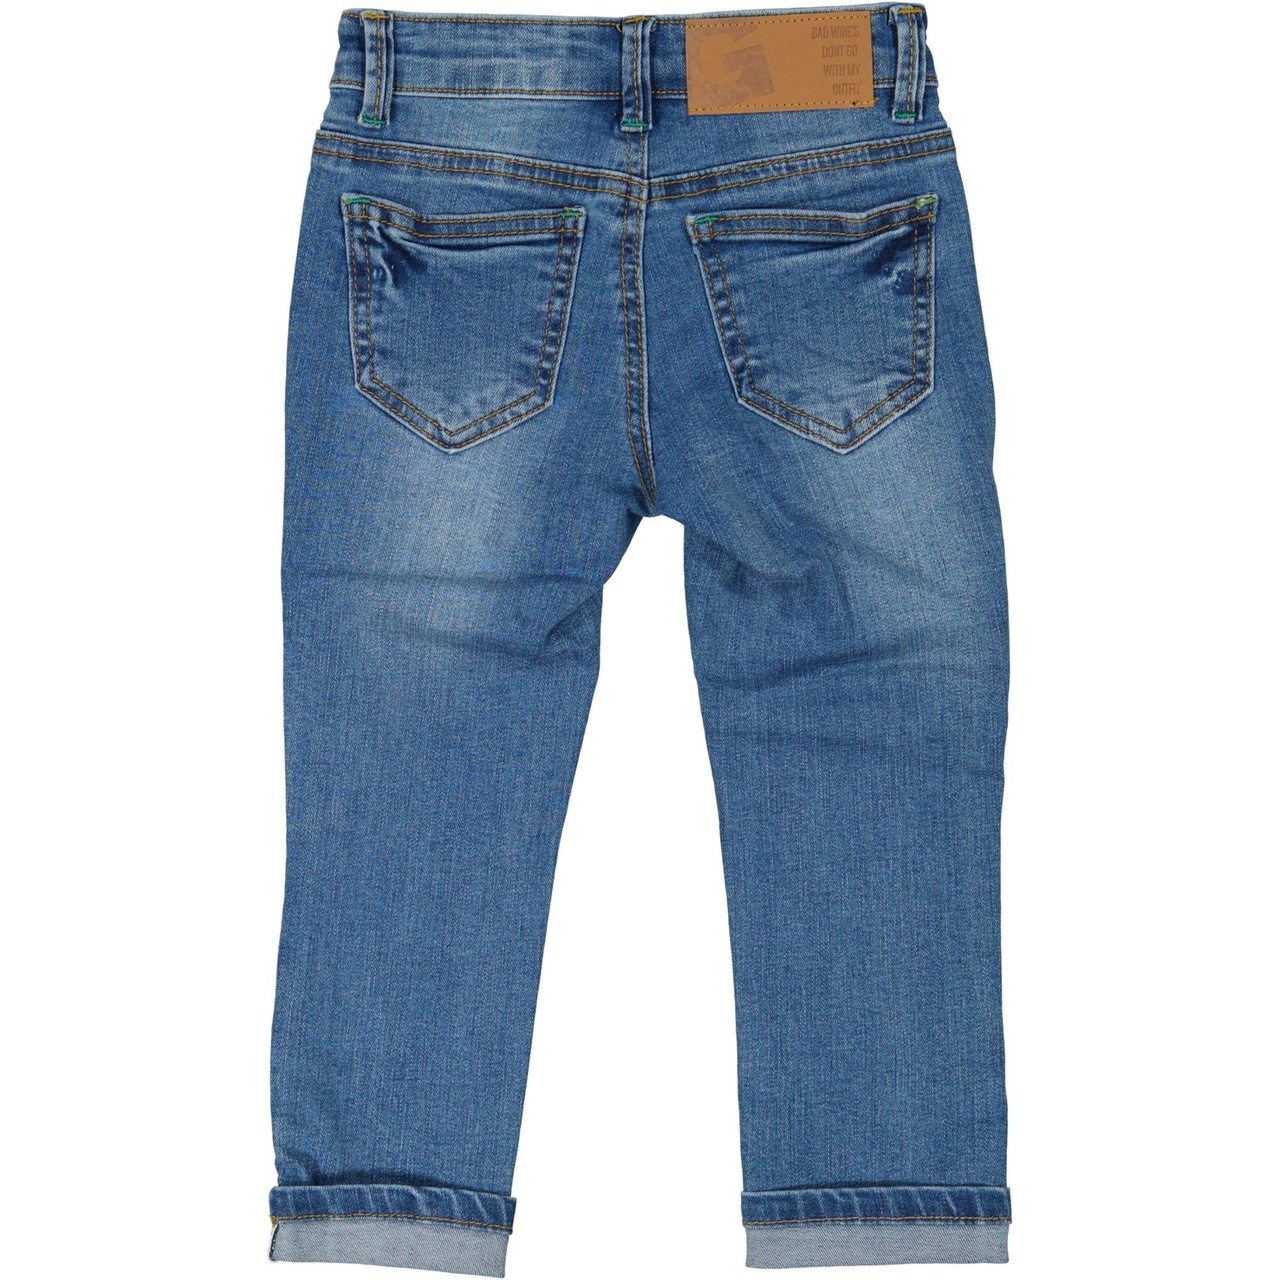 Unisex 5-pocket jeans Denim blue wash 146/152